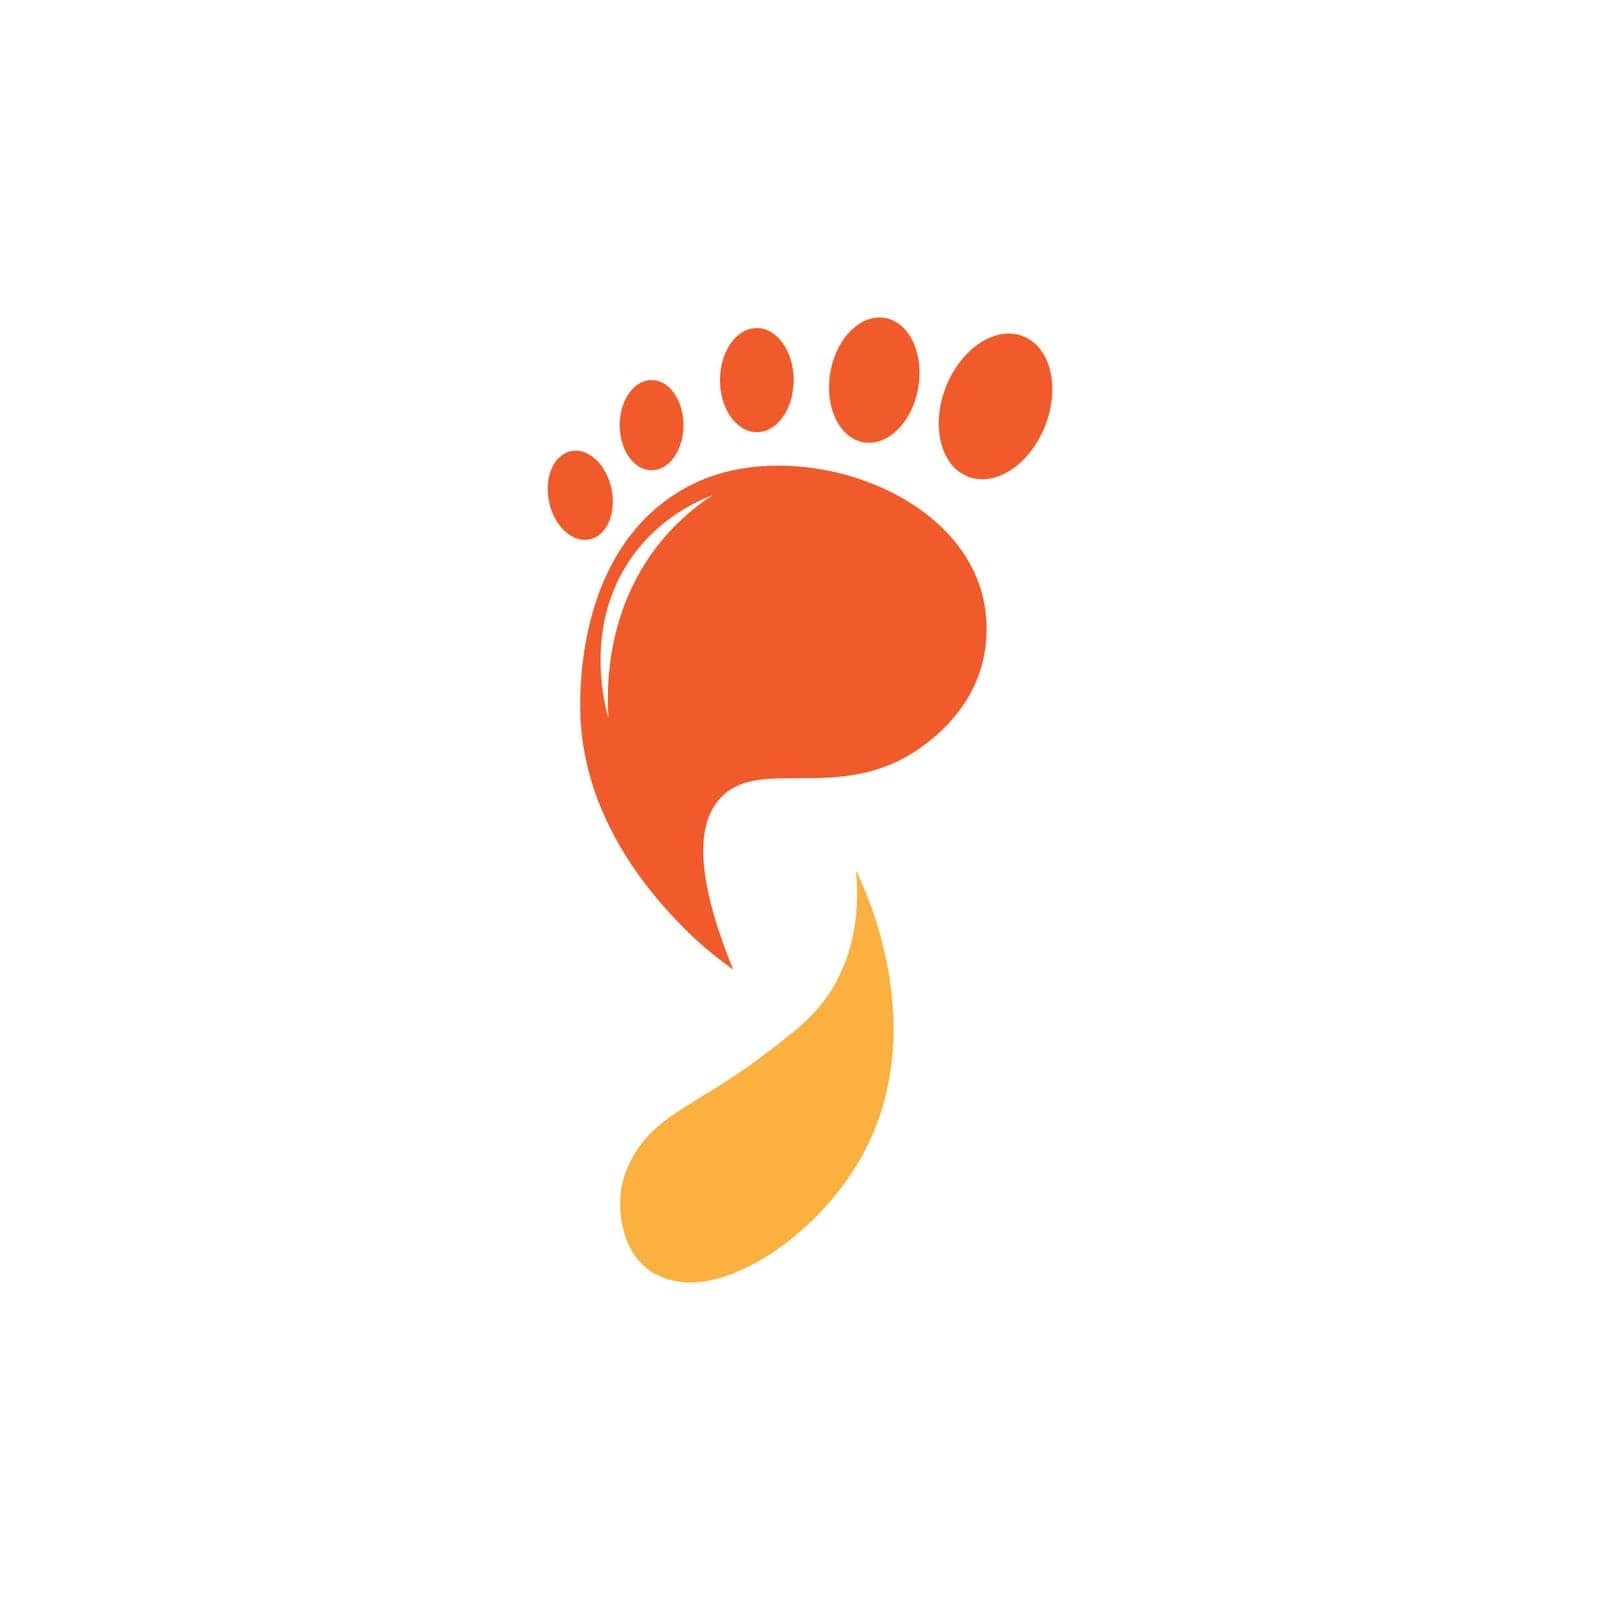 foot illustration logo vector by ABD03